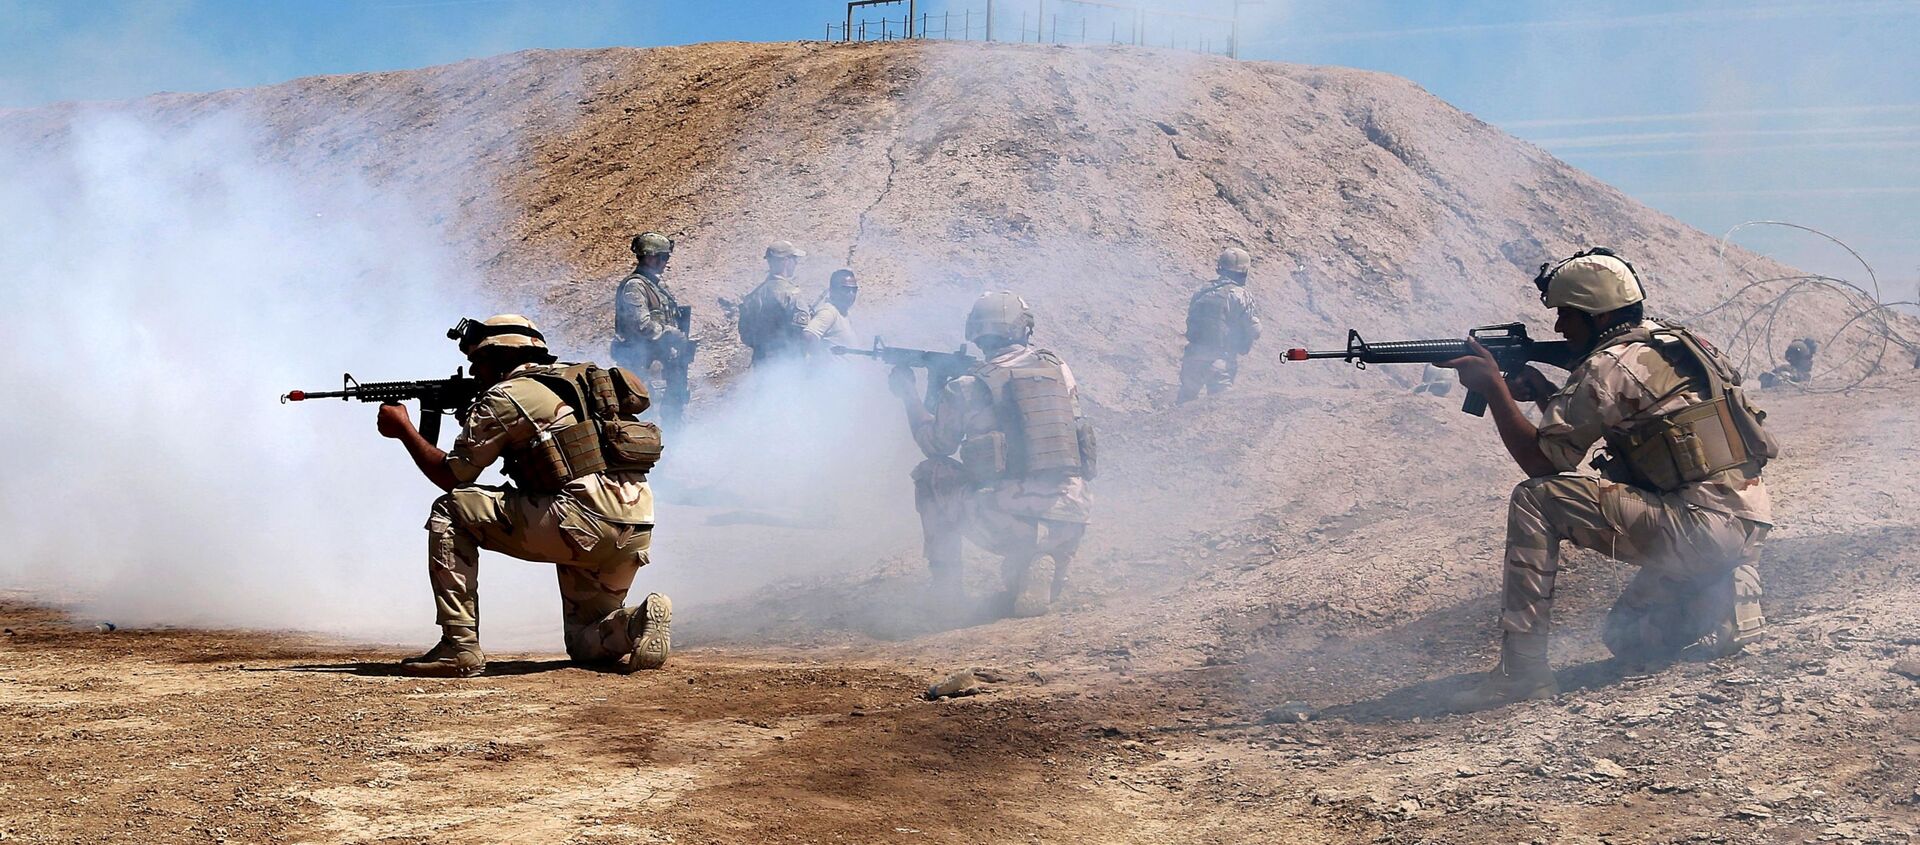 Les forces australiennes et néo-zélandaises de la coalition participent à une mission de formation avec des soldats de l'armée irakienne, en Irak. Avril 2019 - Sputnik Afrique, 1920, 04.12.2020